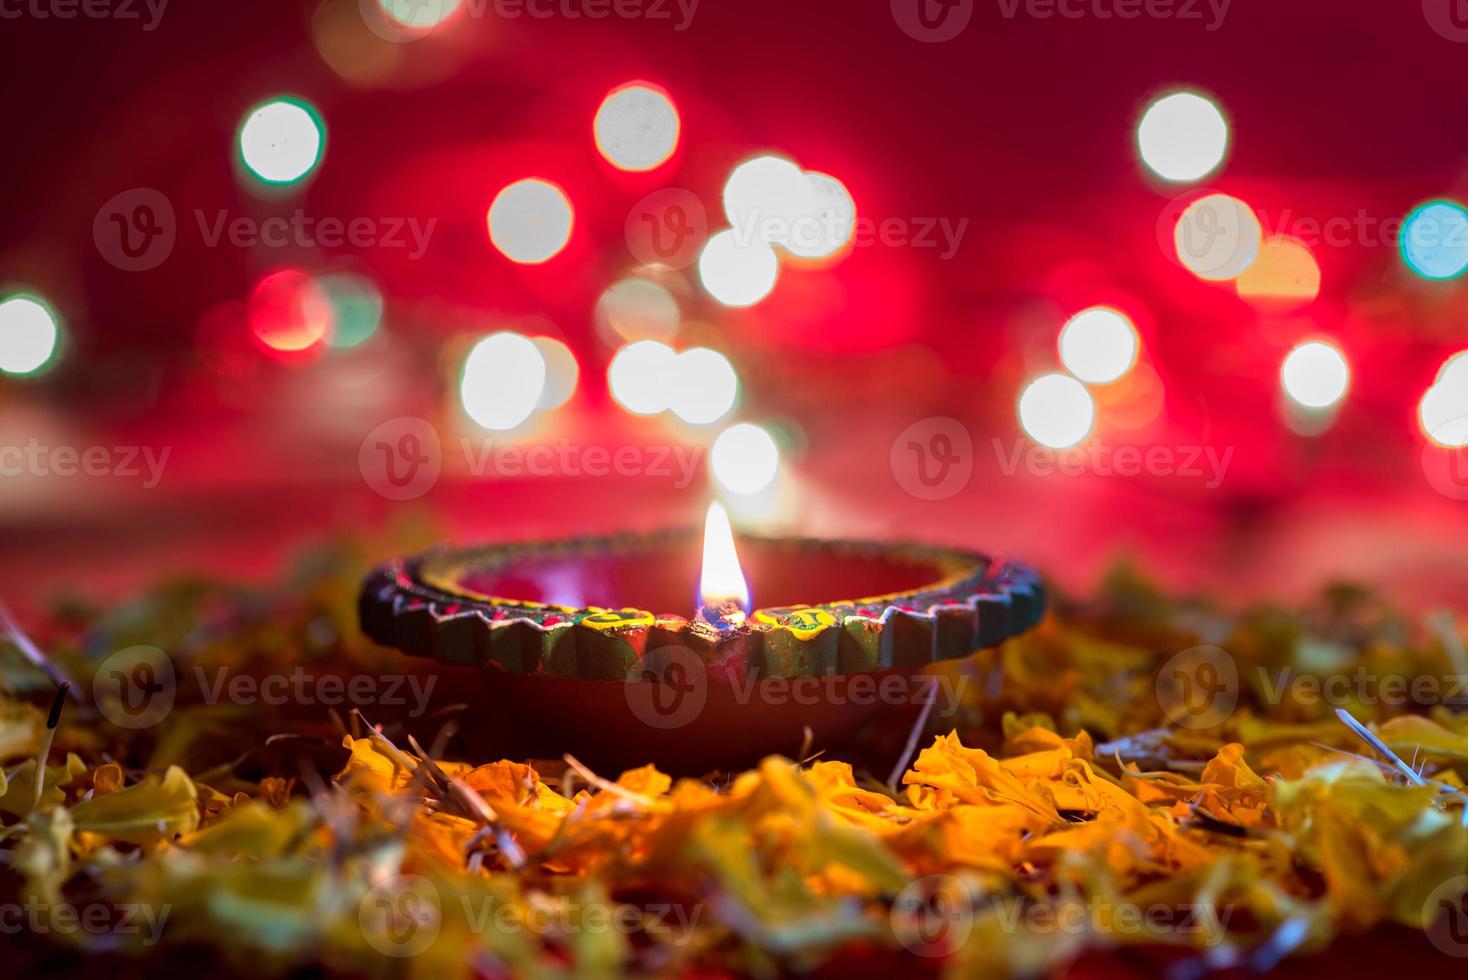 happy diwali - lâmpadas diya de argila acesas durante a celebração do diwali. design de cartão de cumprimentos do festival indiano da luz hindu chamado diwali foto